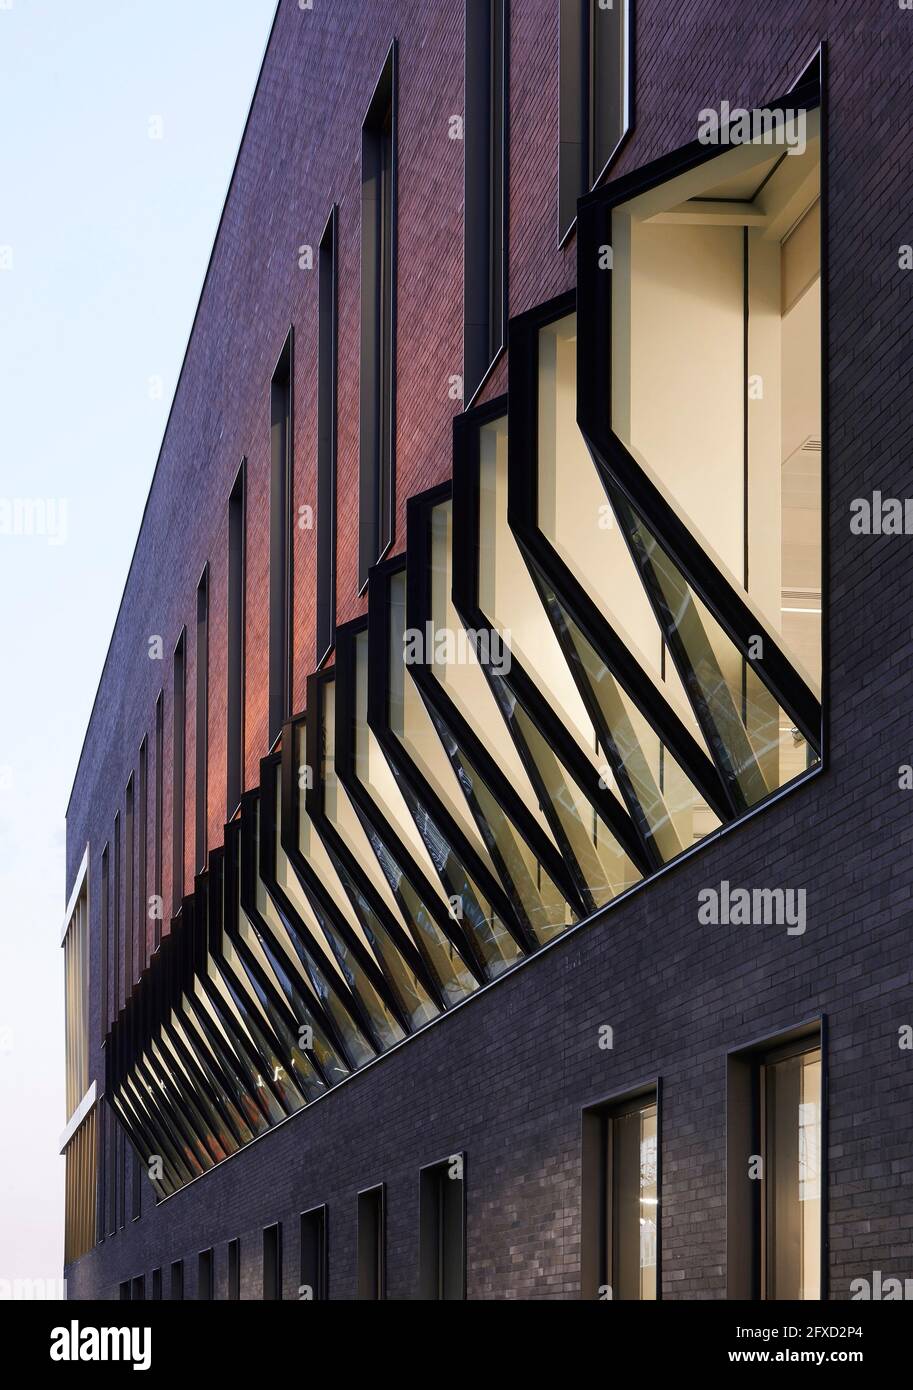 Fassadendetails in der Dämmerung mit beleuchteten Innenräumen. University of Birmingham, Collaborative Teaching Laboratory, Birmingham, Großbritannien. Architekt: Sheppard Stockfoto